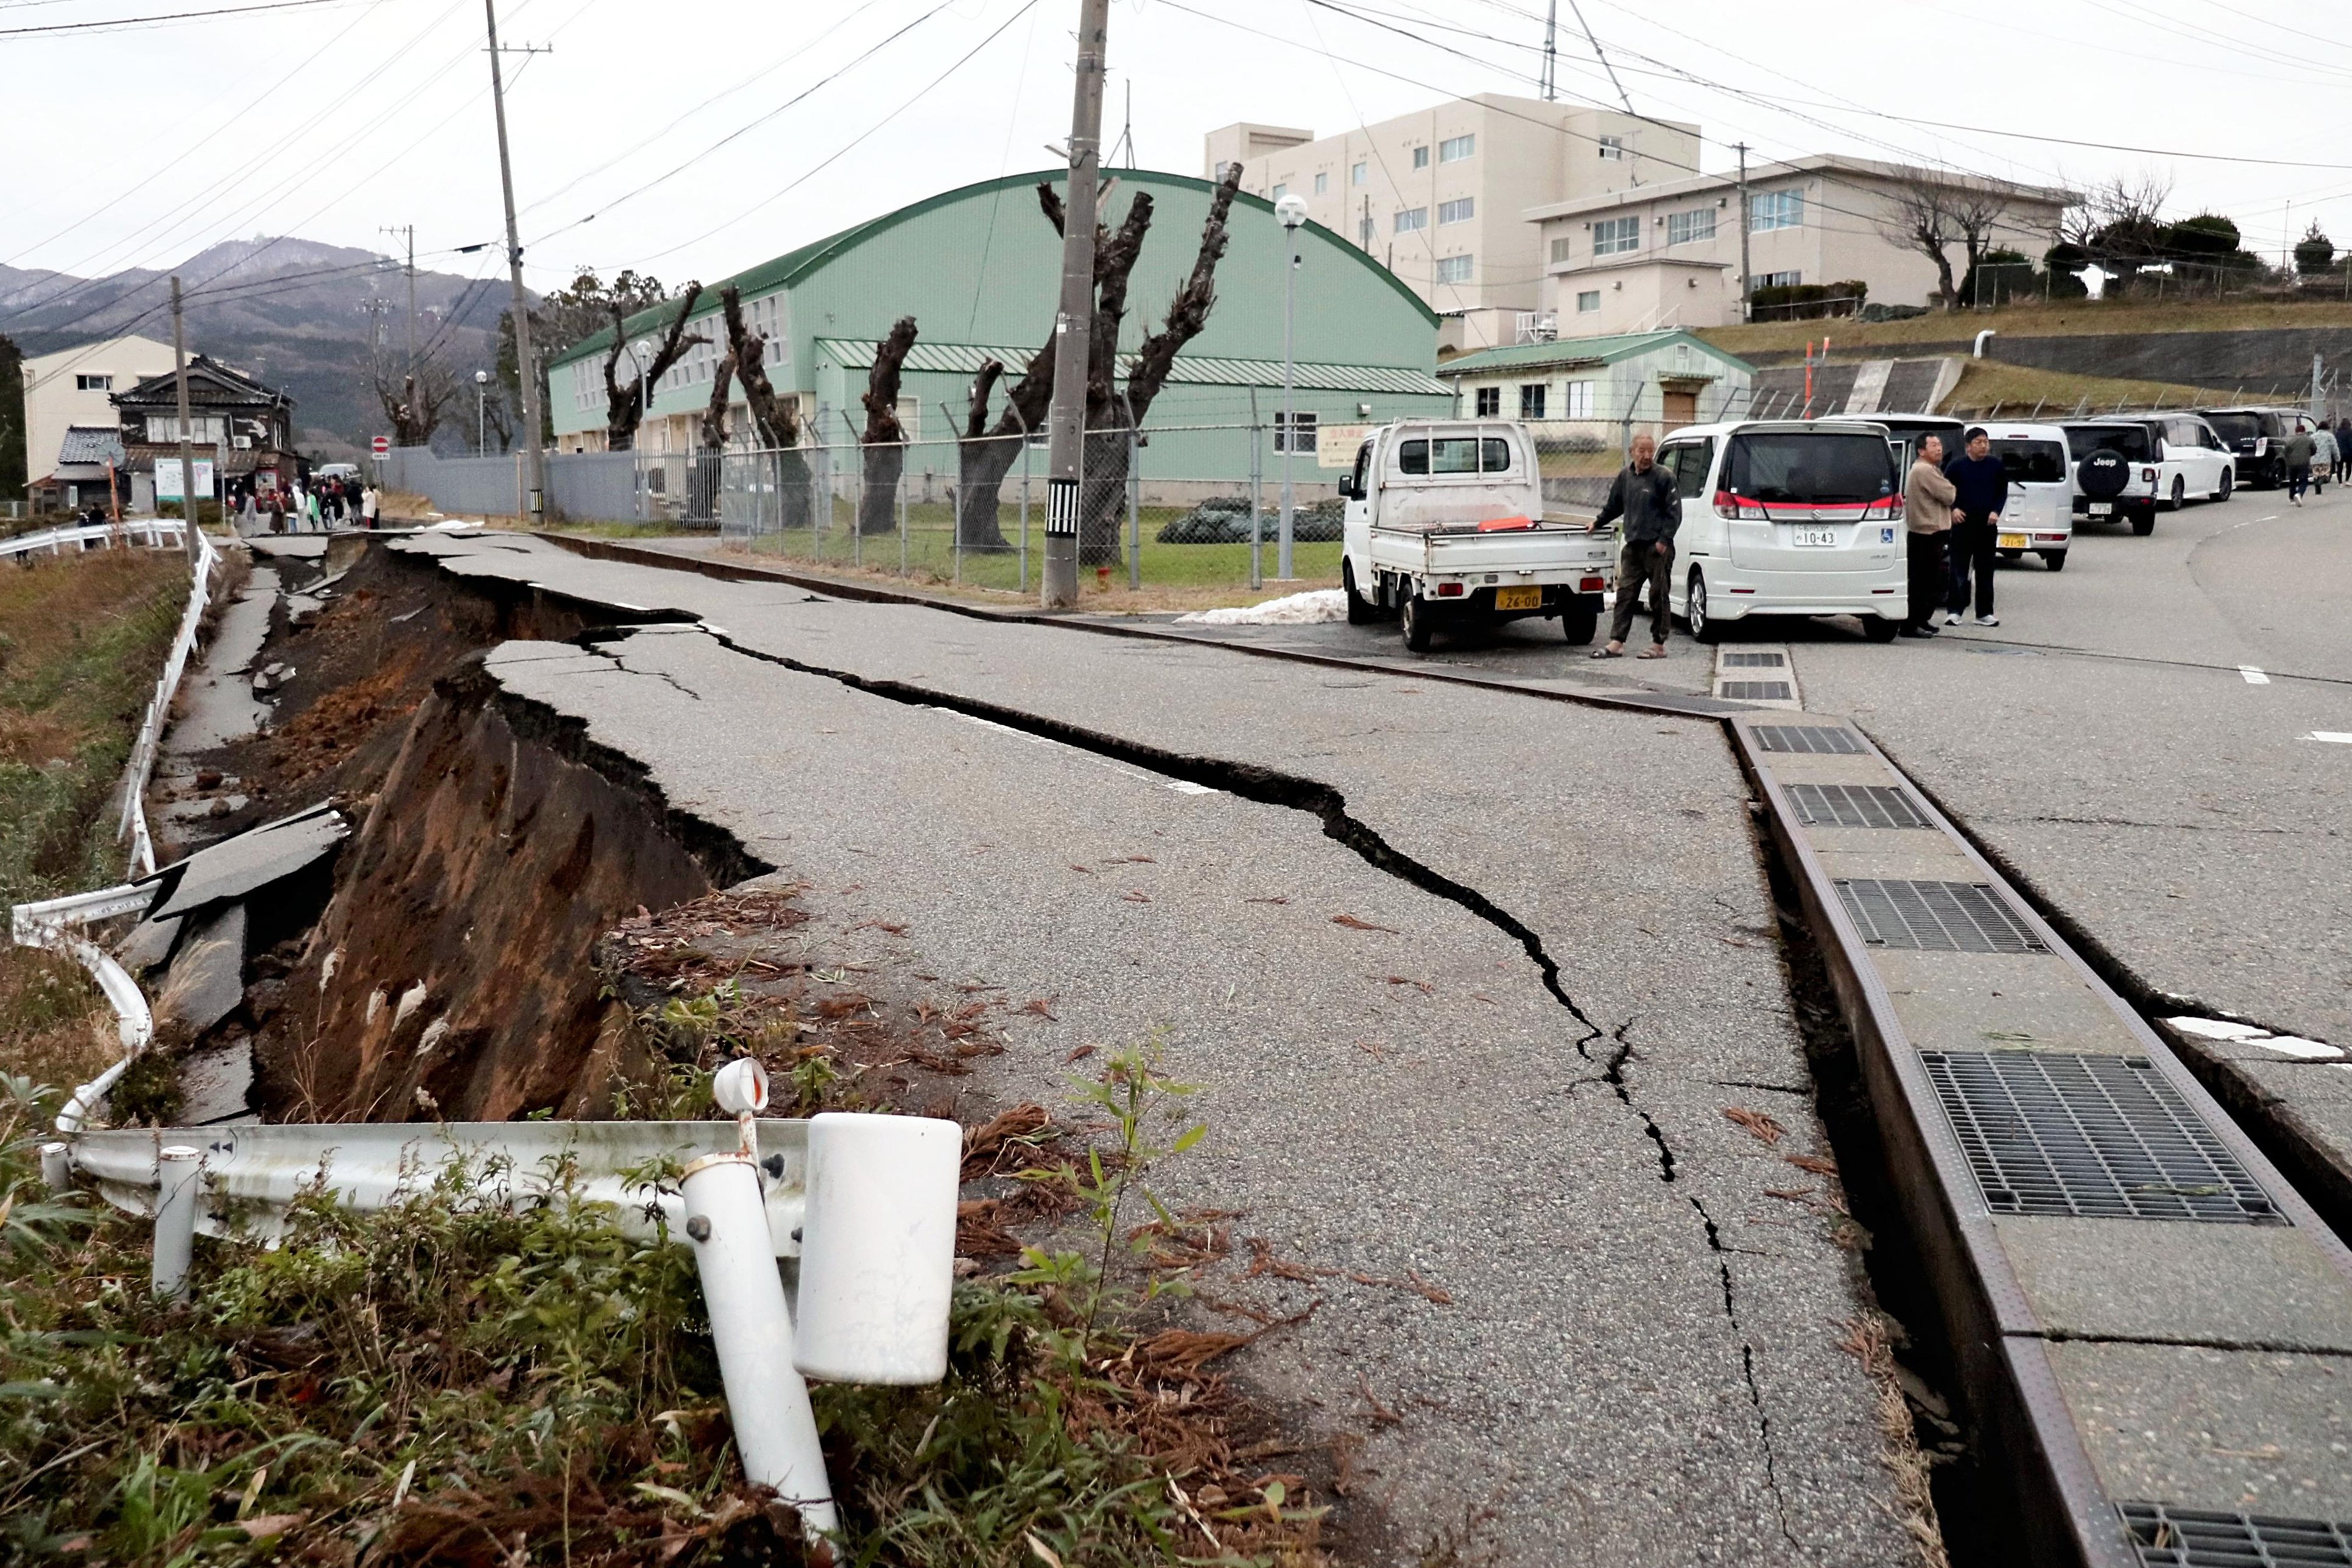 เสียหายหนัก แผ่นดินไหว-สึนามิถล่มญี่ปุ่น บ้านเรือนถล่มอื้อ-ถนนพังระเนระนาด